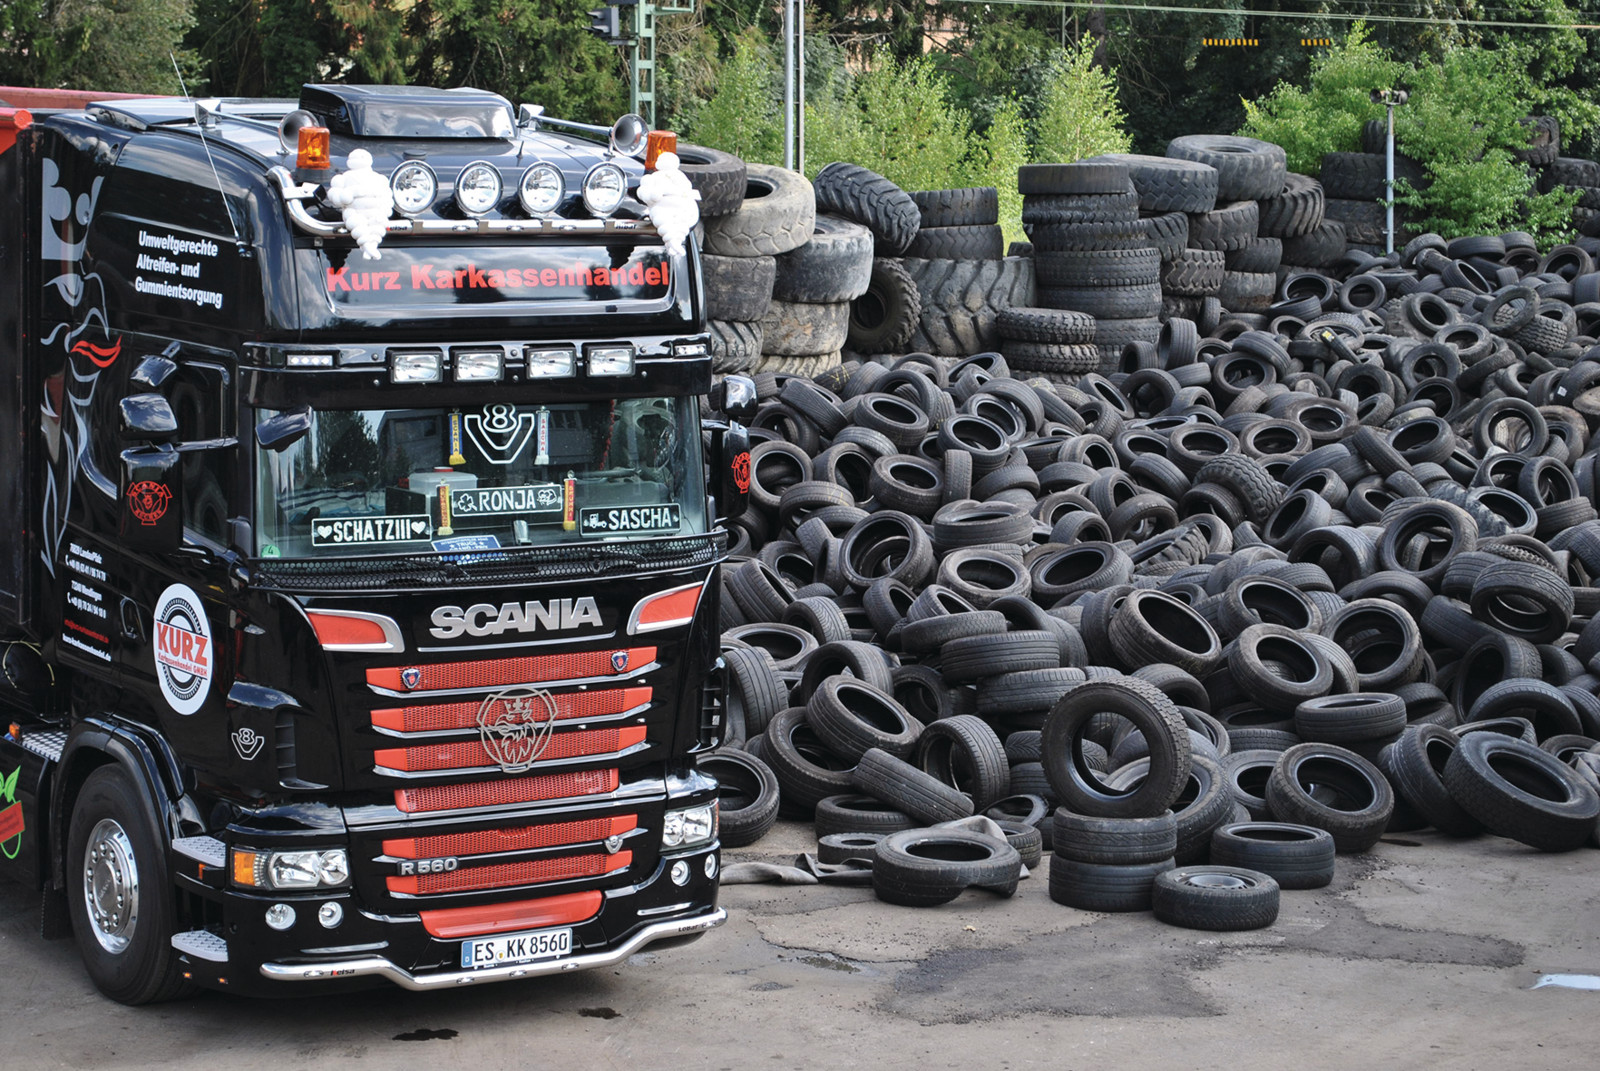 Kurz Karkassenhandel aus Wendlingen in Baden-Württemberg verlost unter seinen Kunden Gutscheine für die Reifenentsorgung. 